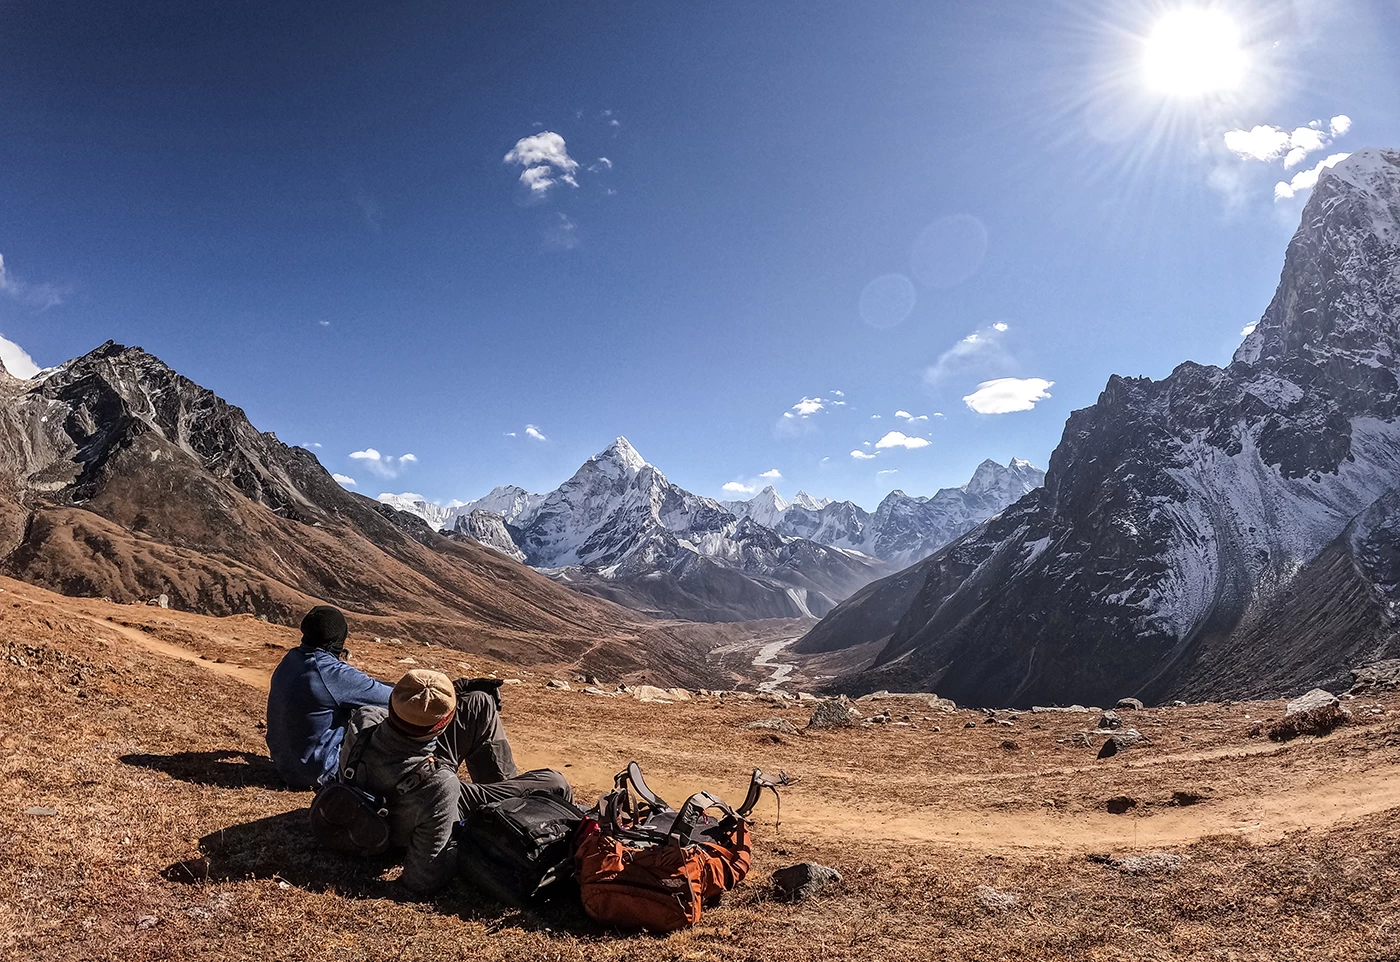  Panorama Himalayan View, Everest. 